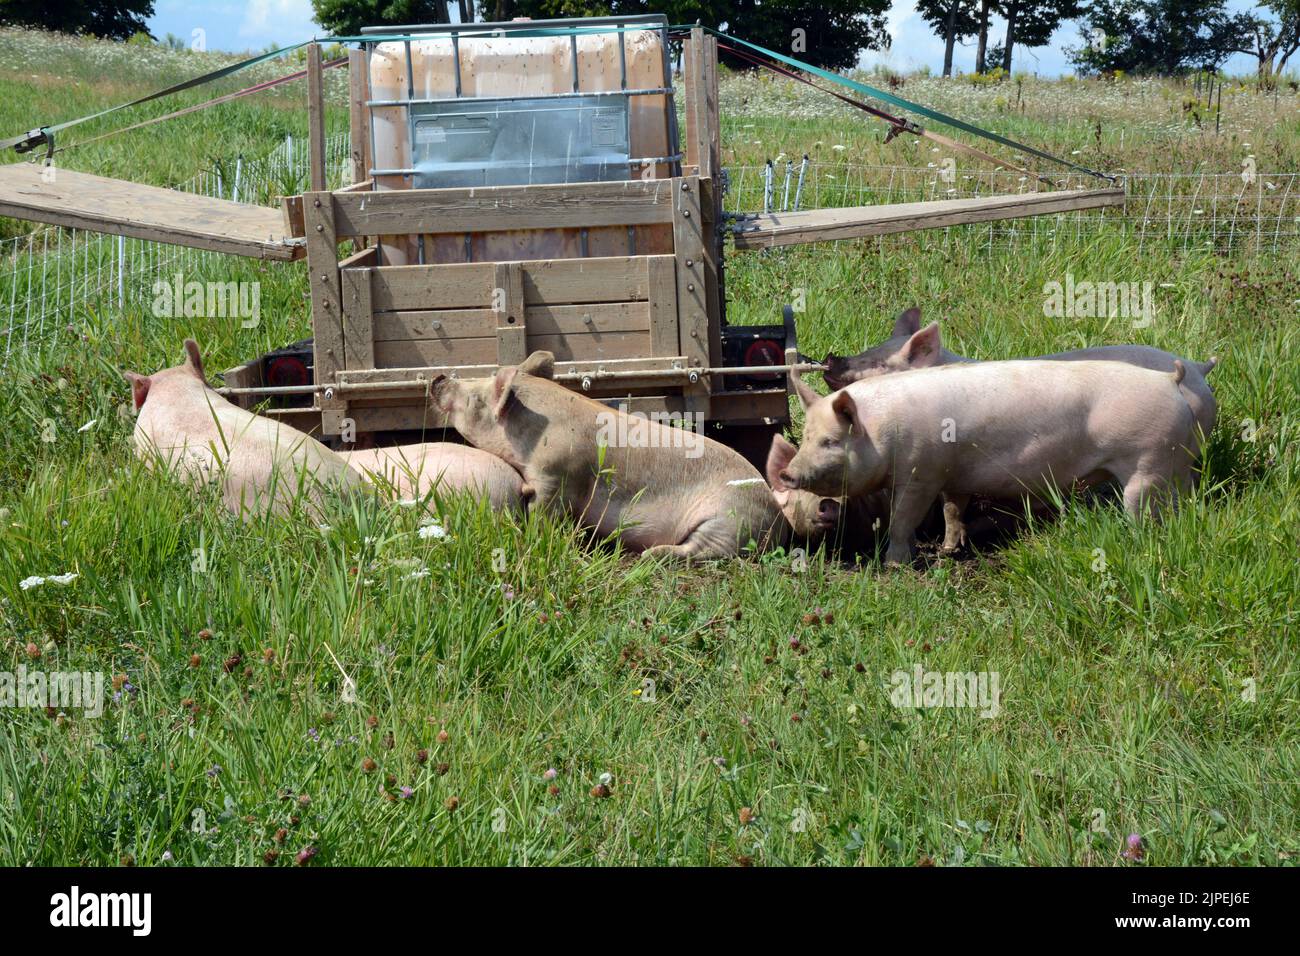 Cerdos de tiro libre que beben de una canaleta de agua criada humanamente en una granja orgánica sostenible en pequeña escala cerca de la ciudad de Creemore, Ontario, Canadá. Foto de stock